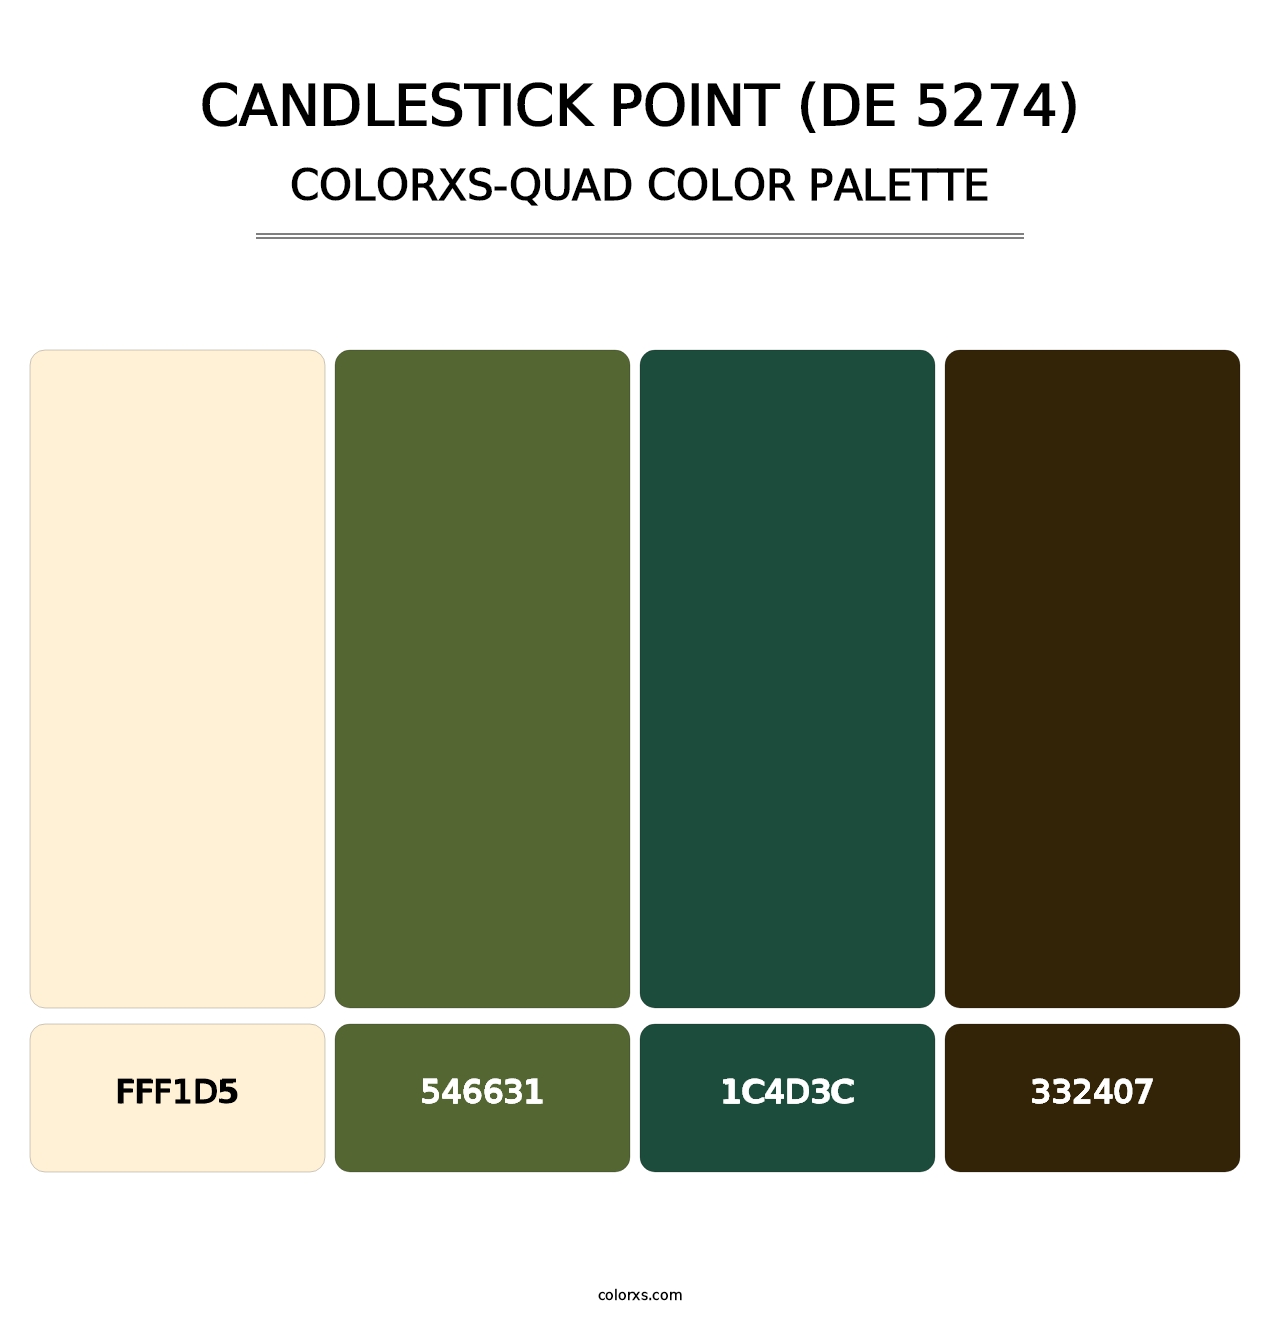 Candlestick Point (DE 5274) - Colorxs Quad Palette